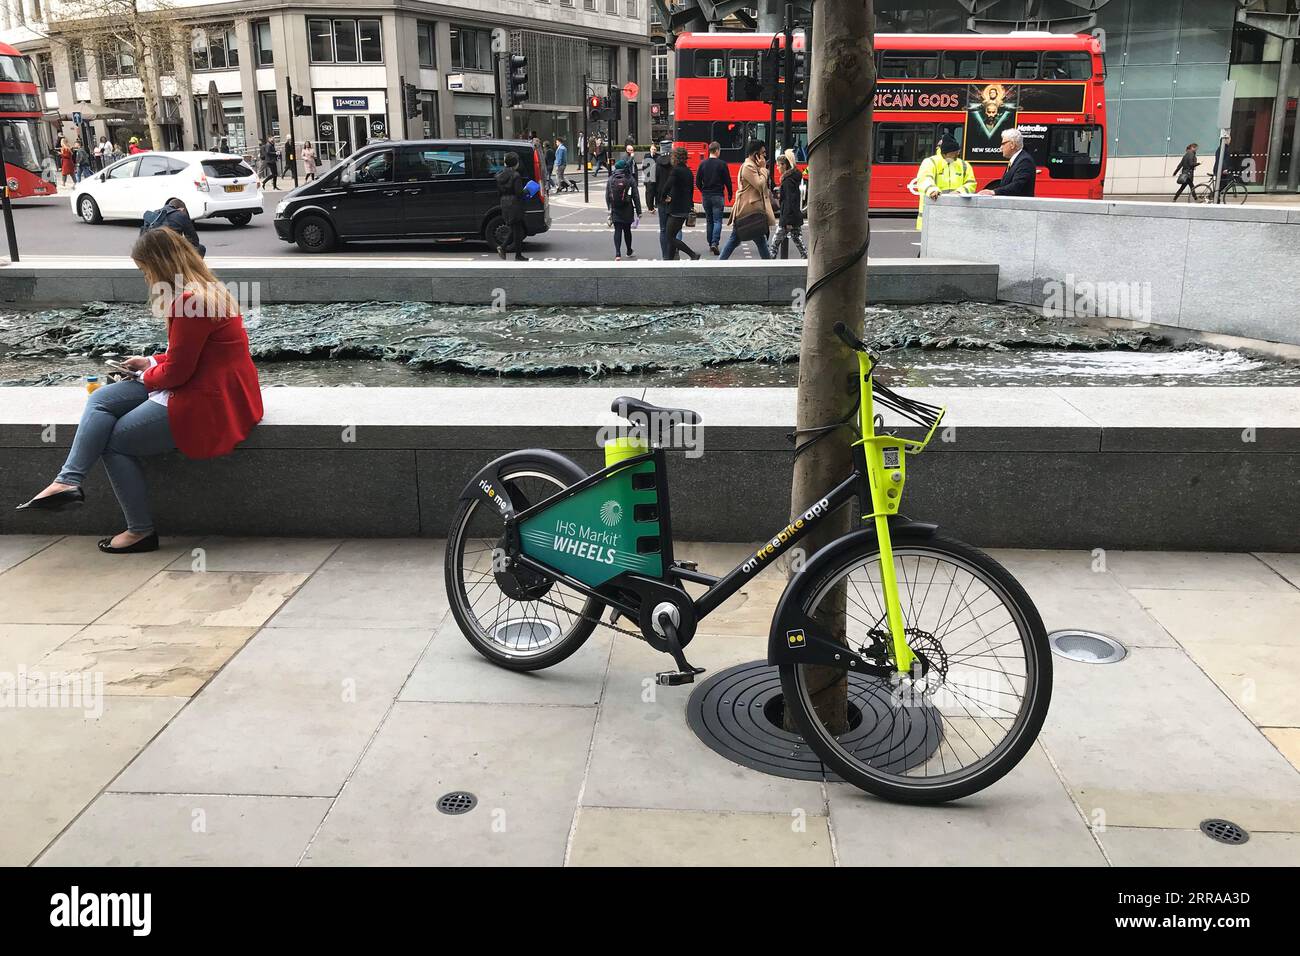 Ein Freebike, ein elektrisches Leihfahrrad ohne Dock, wird am Dienstag, den 2. April 2019, in London, Großbritannien auf einem Bürgersteig gelassen. Fotograf: Bryn Colton Stockfoto